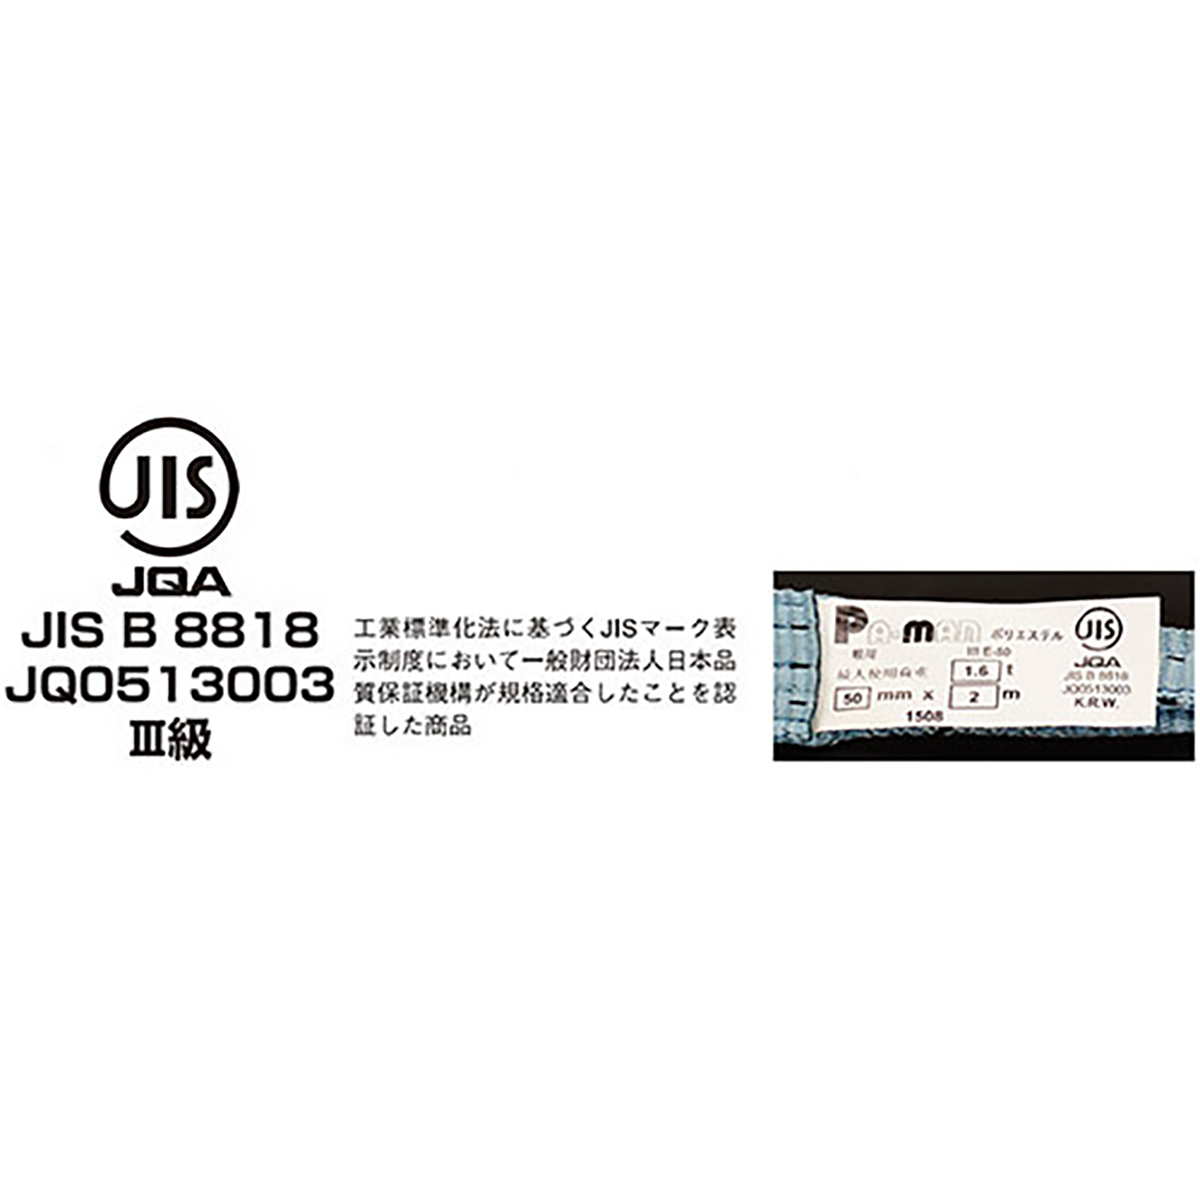 ポリベルトスリング JIS III級 ソフト面付 巾35mm 4.5m 1本